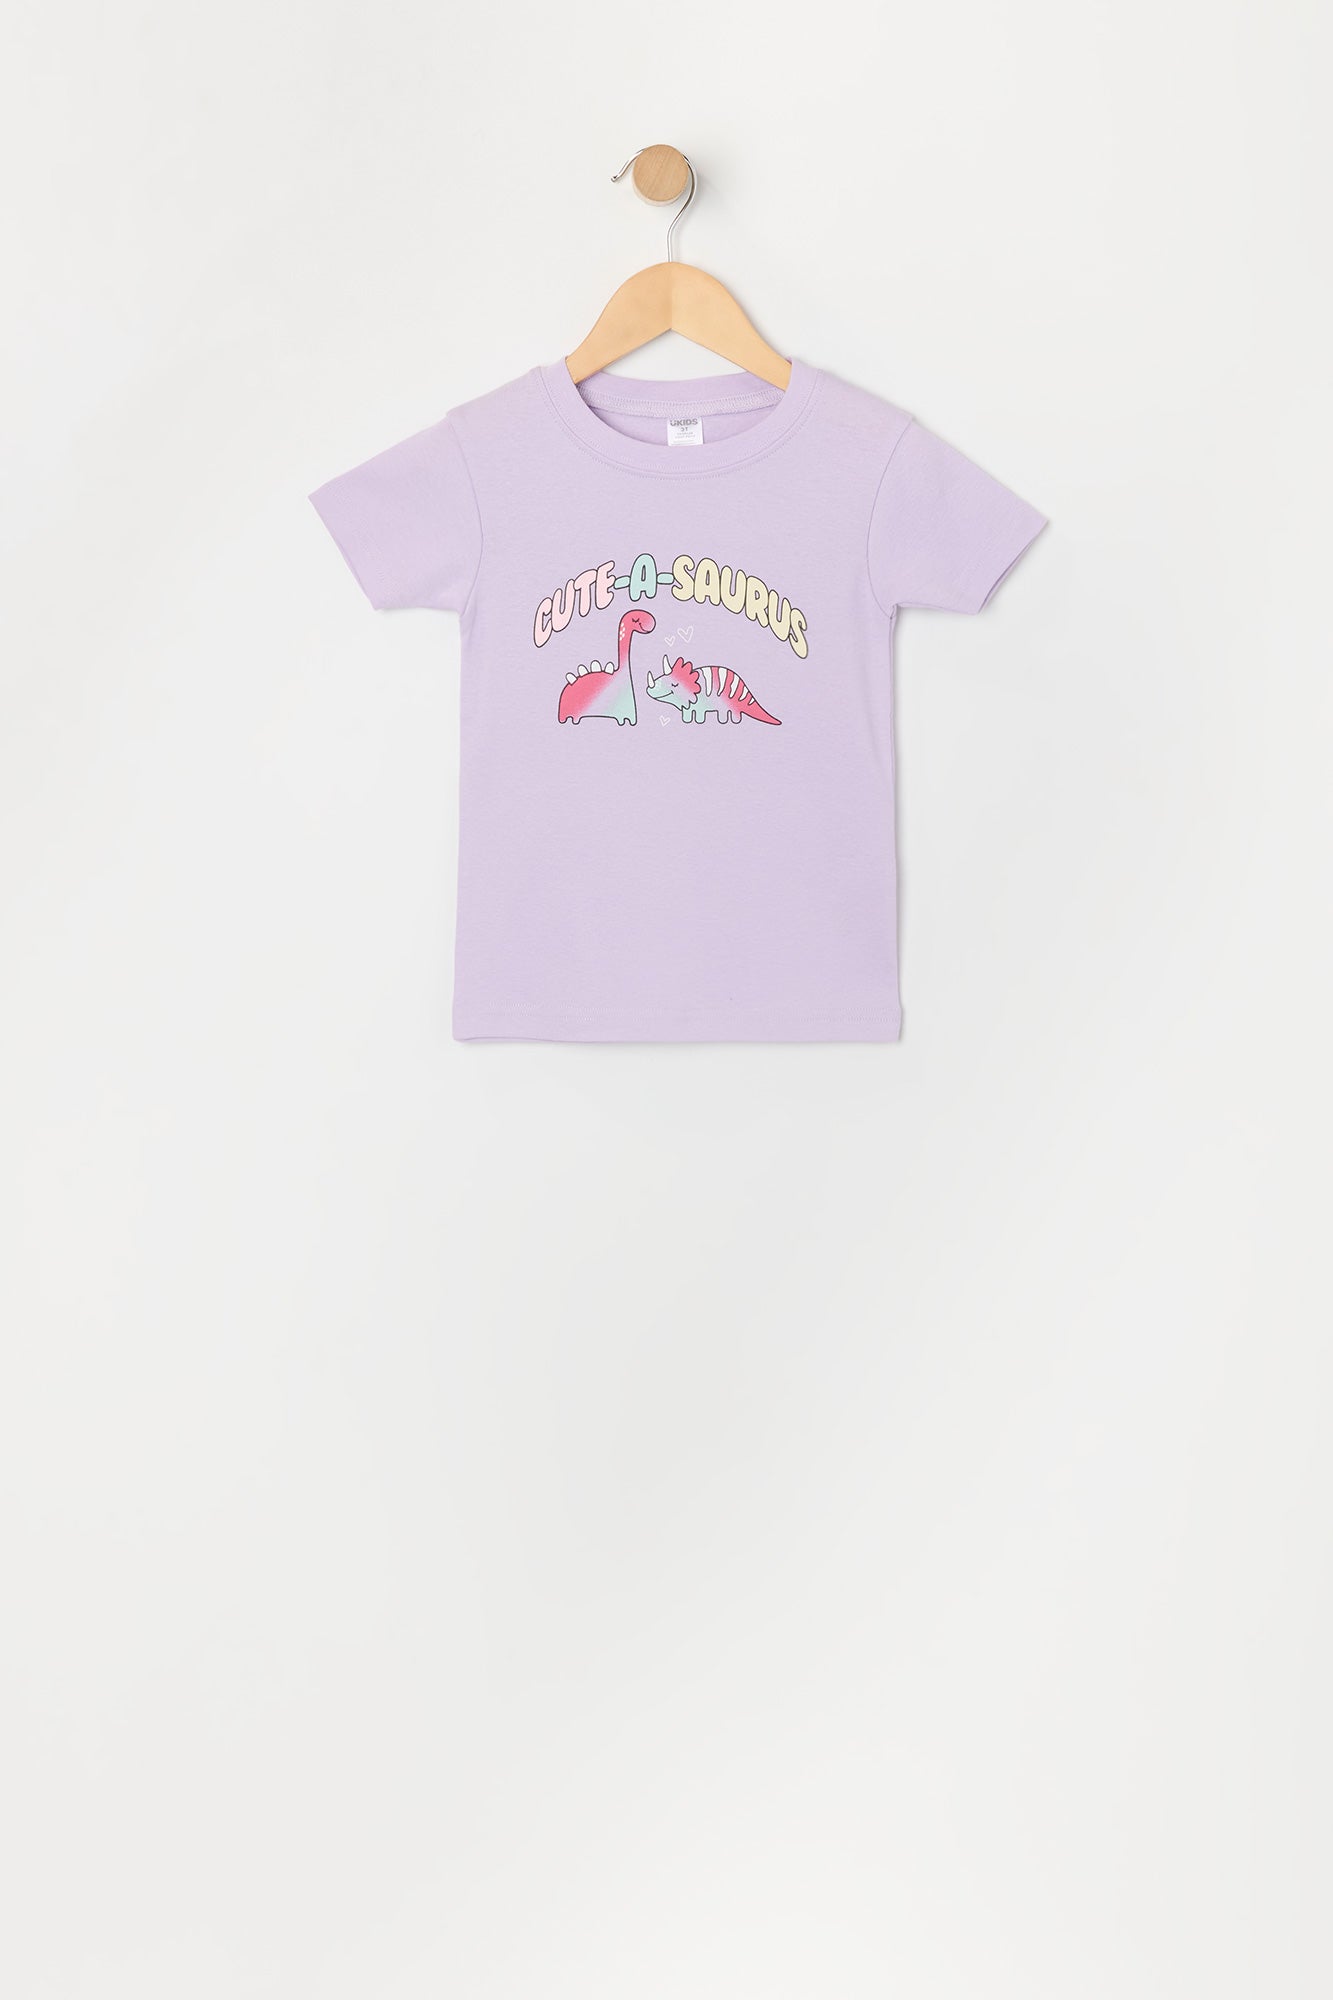 Toddler Girl Cute-A-Sauras 2 Piece Pajama Set